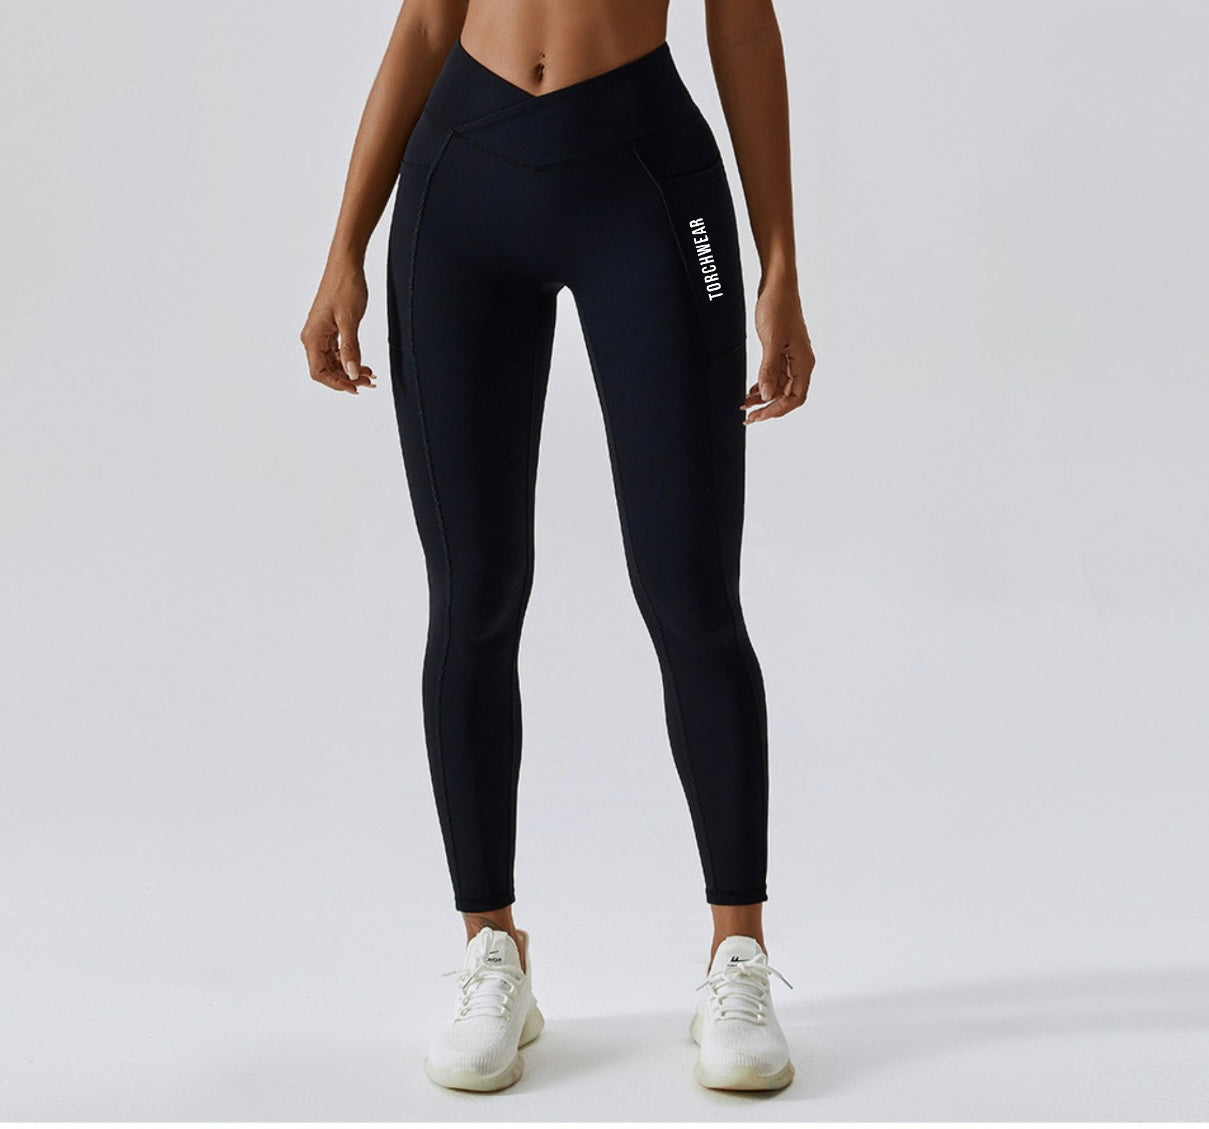 90 Degree Women Leggings Black Grey Workout Yoga XS SM M L Pant